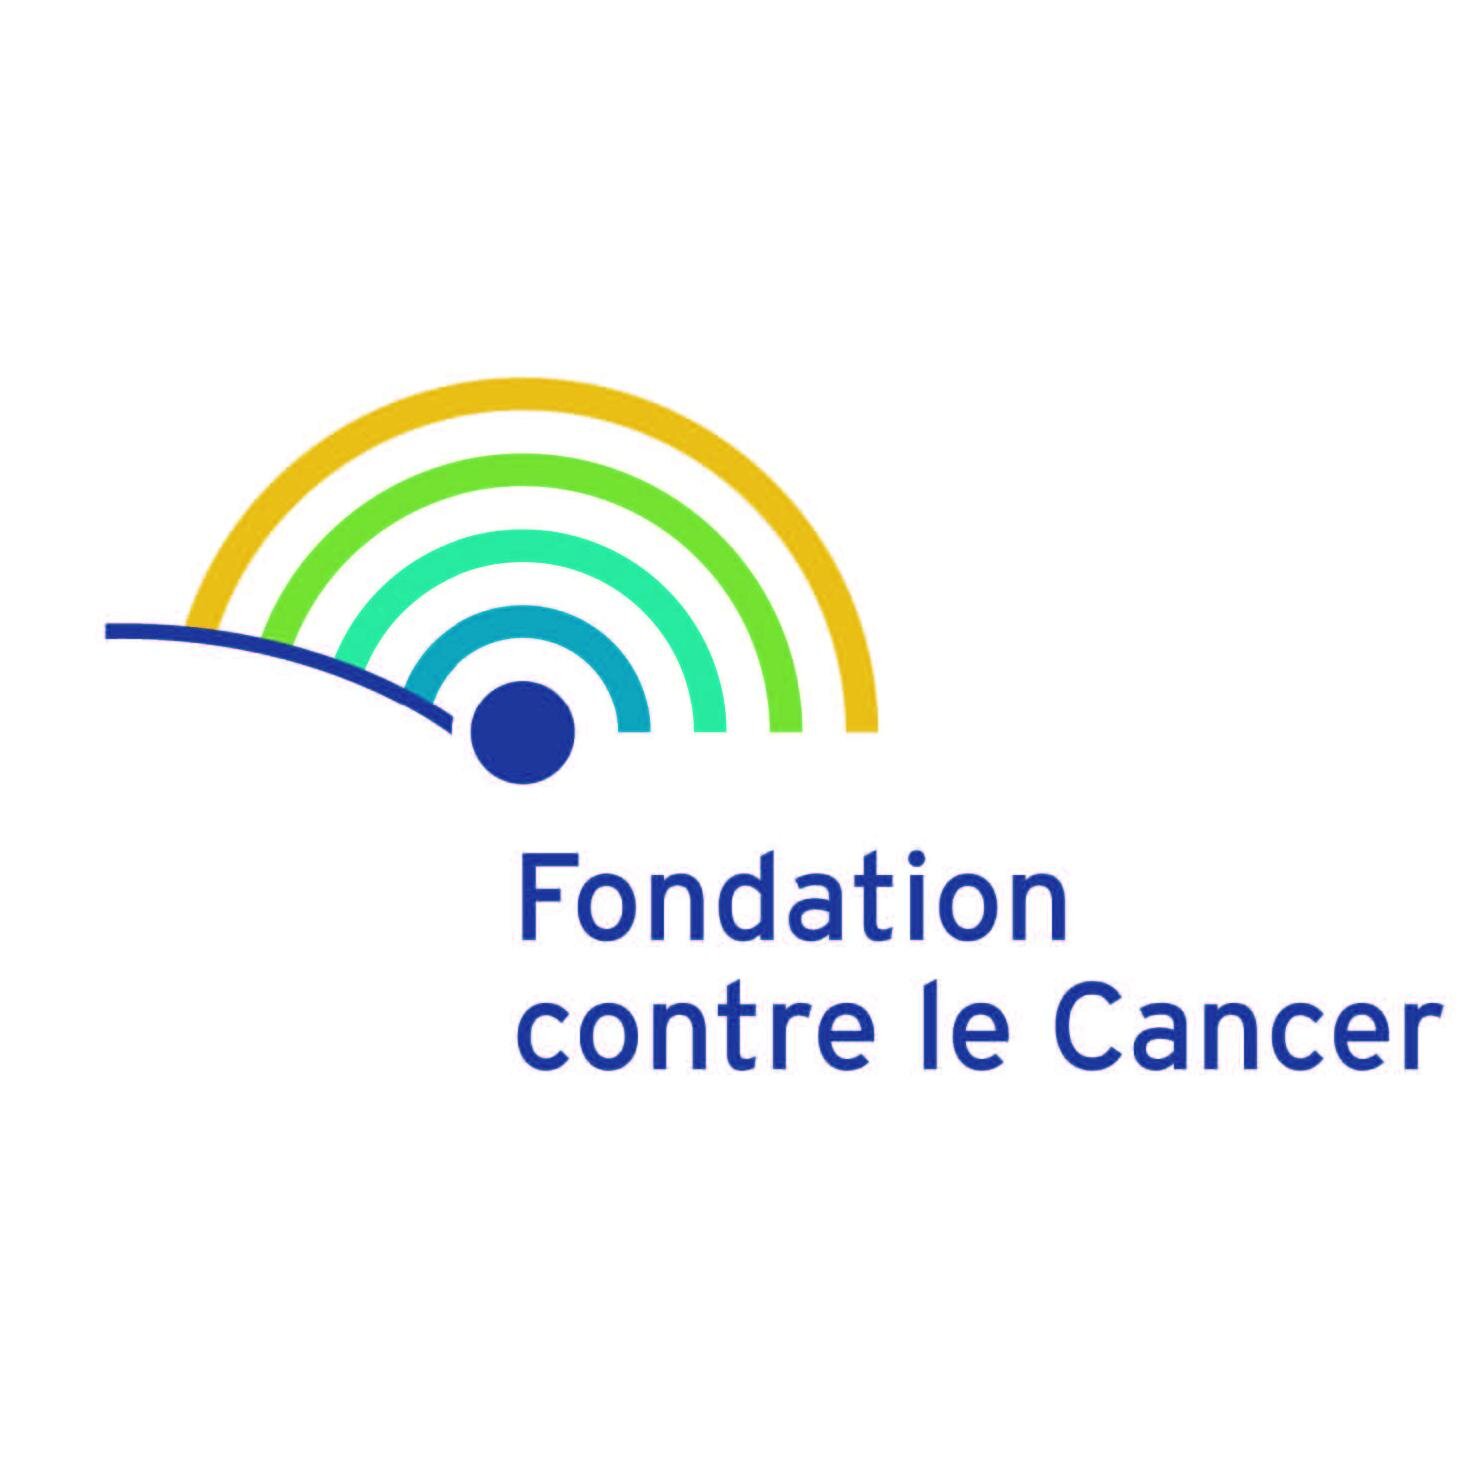 Combattre le cancer sur 3 fronts: recherche, prévention, accompagnement social #ensemblecontrelecancer